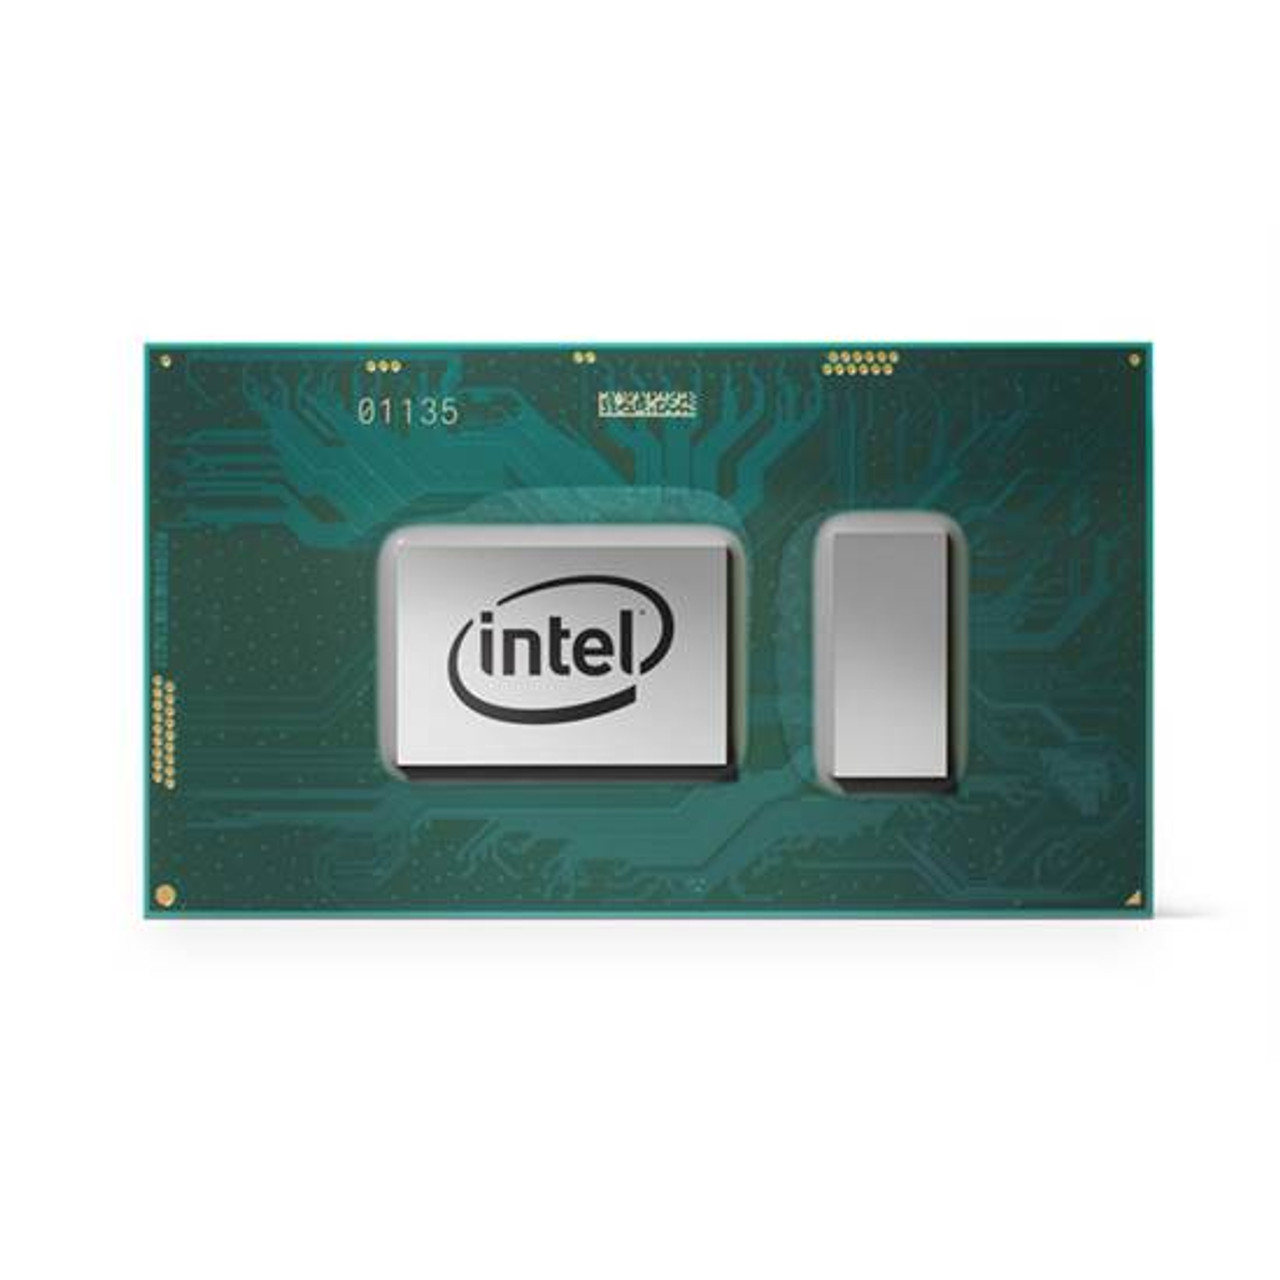 Intel Core i5-8400 Processor 2.8GHz 9MB Smart Cache Box processor